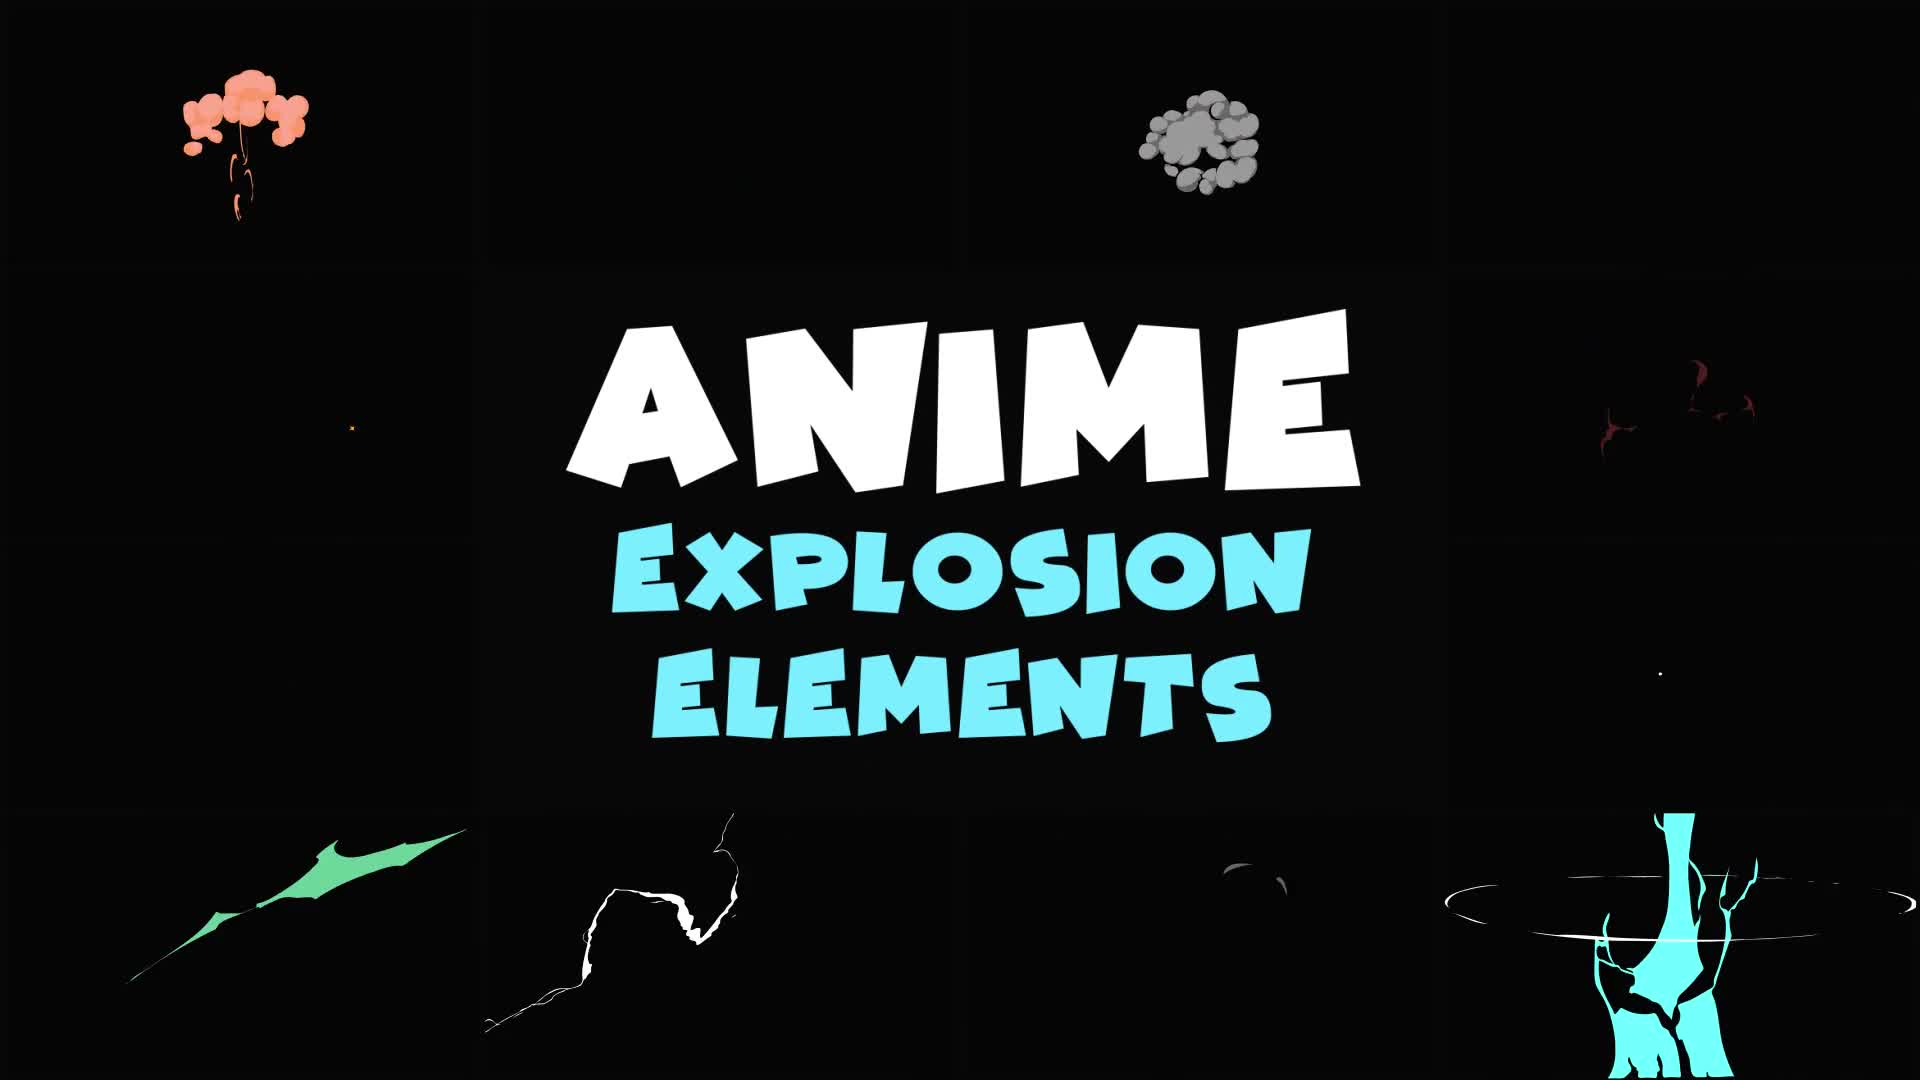 Anime Explosion Elements | Premiere Pro MOGRT Videohive 37630861 Premiere Pro Image 1